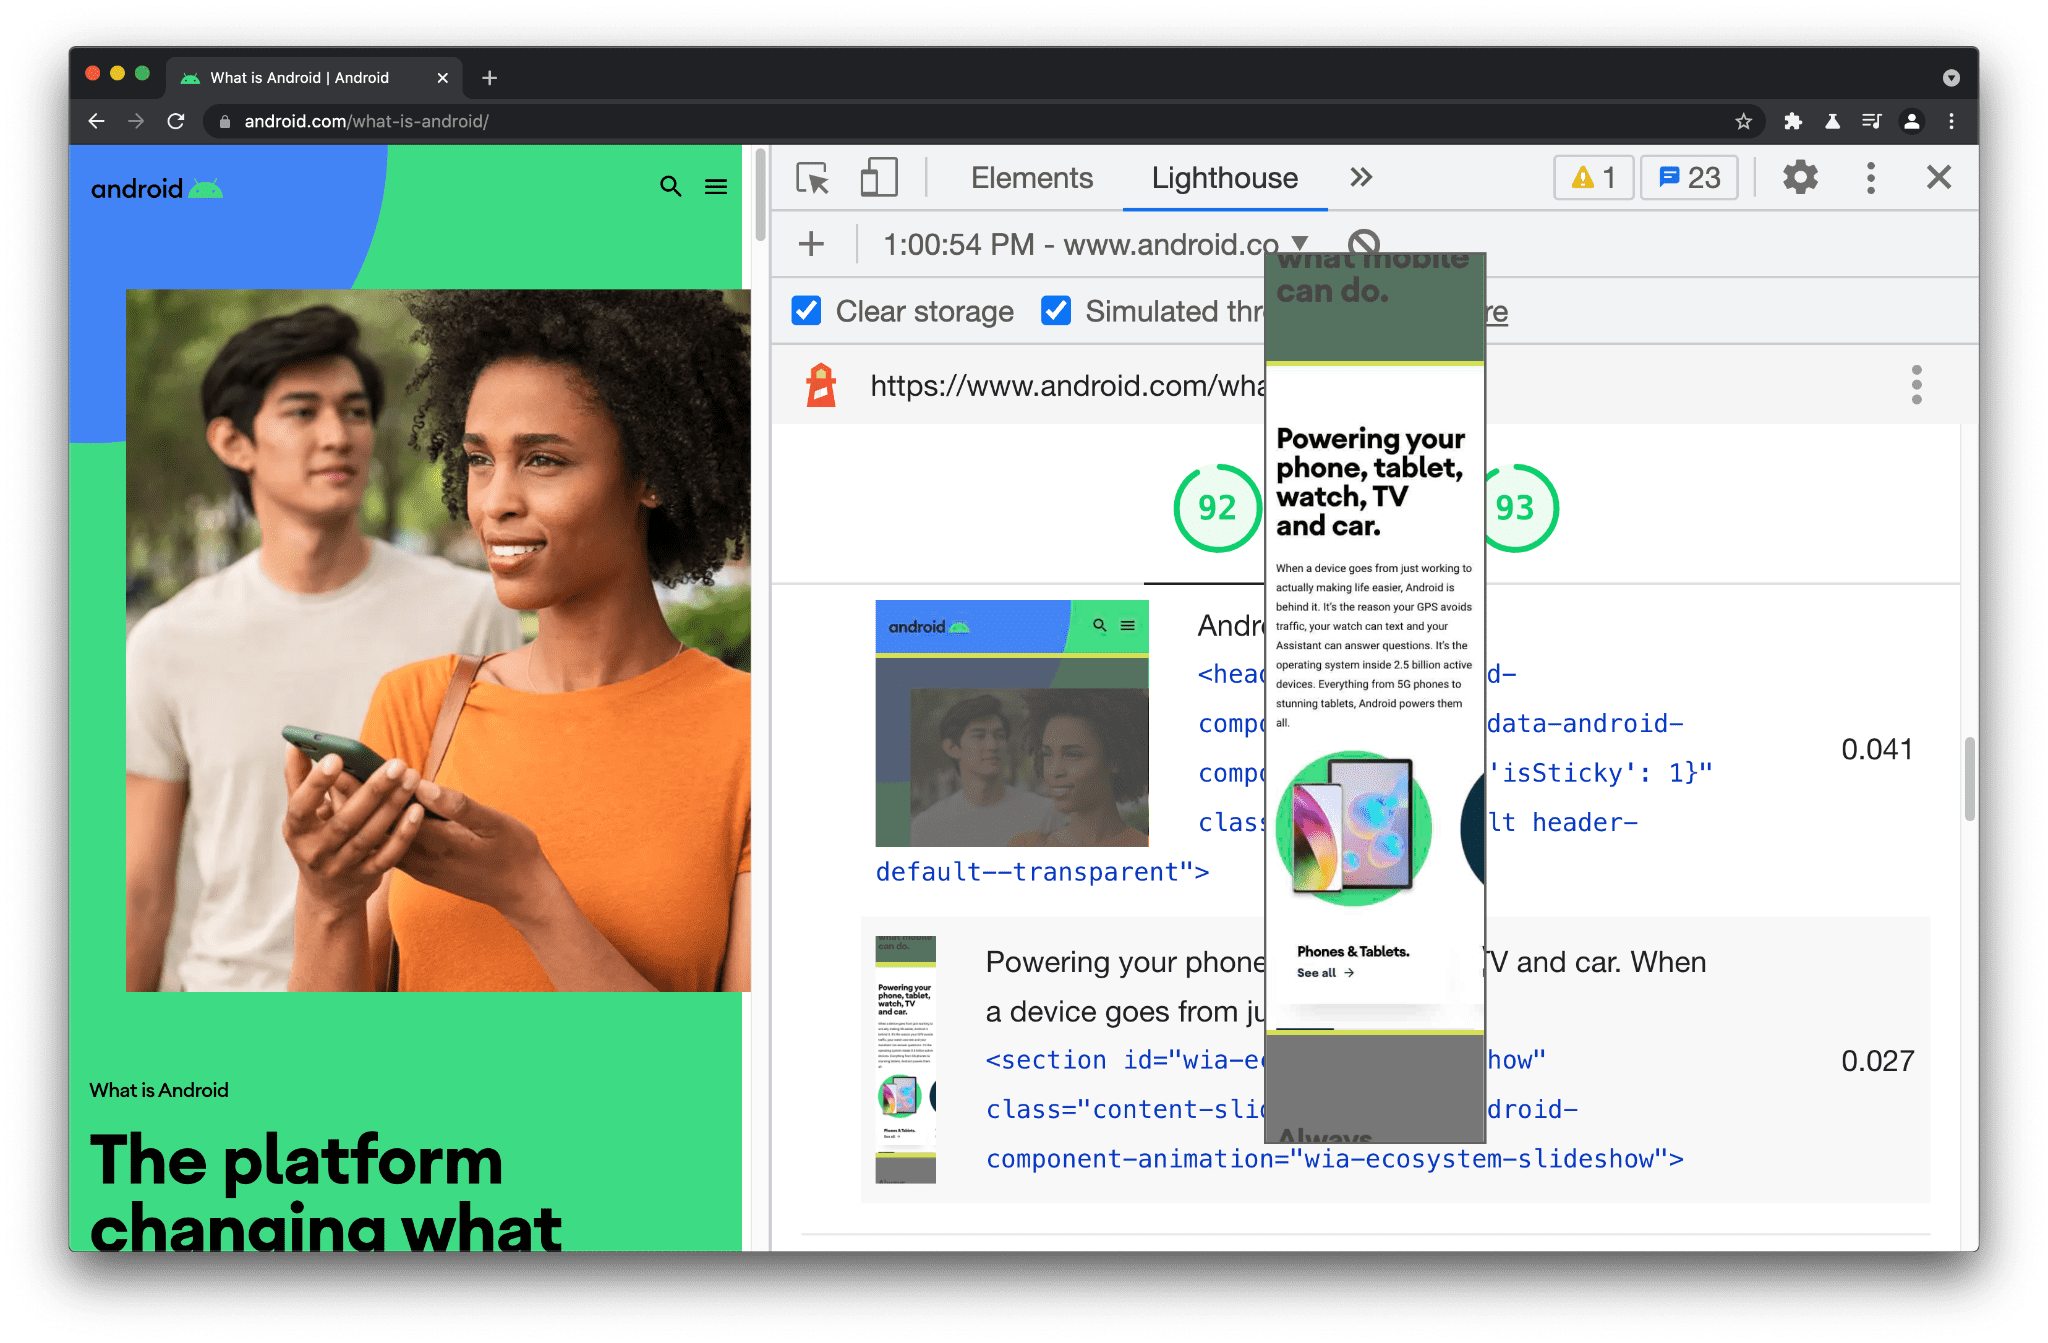 Wenn Sie auf einen Element-Screenshot klicken, wird es maximiert.